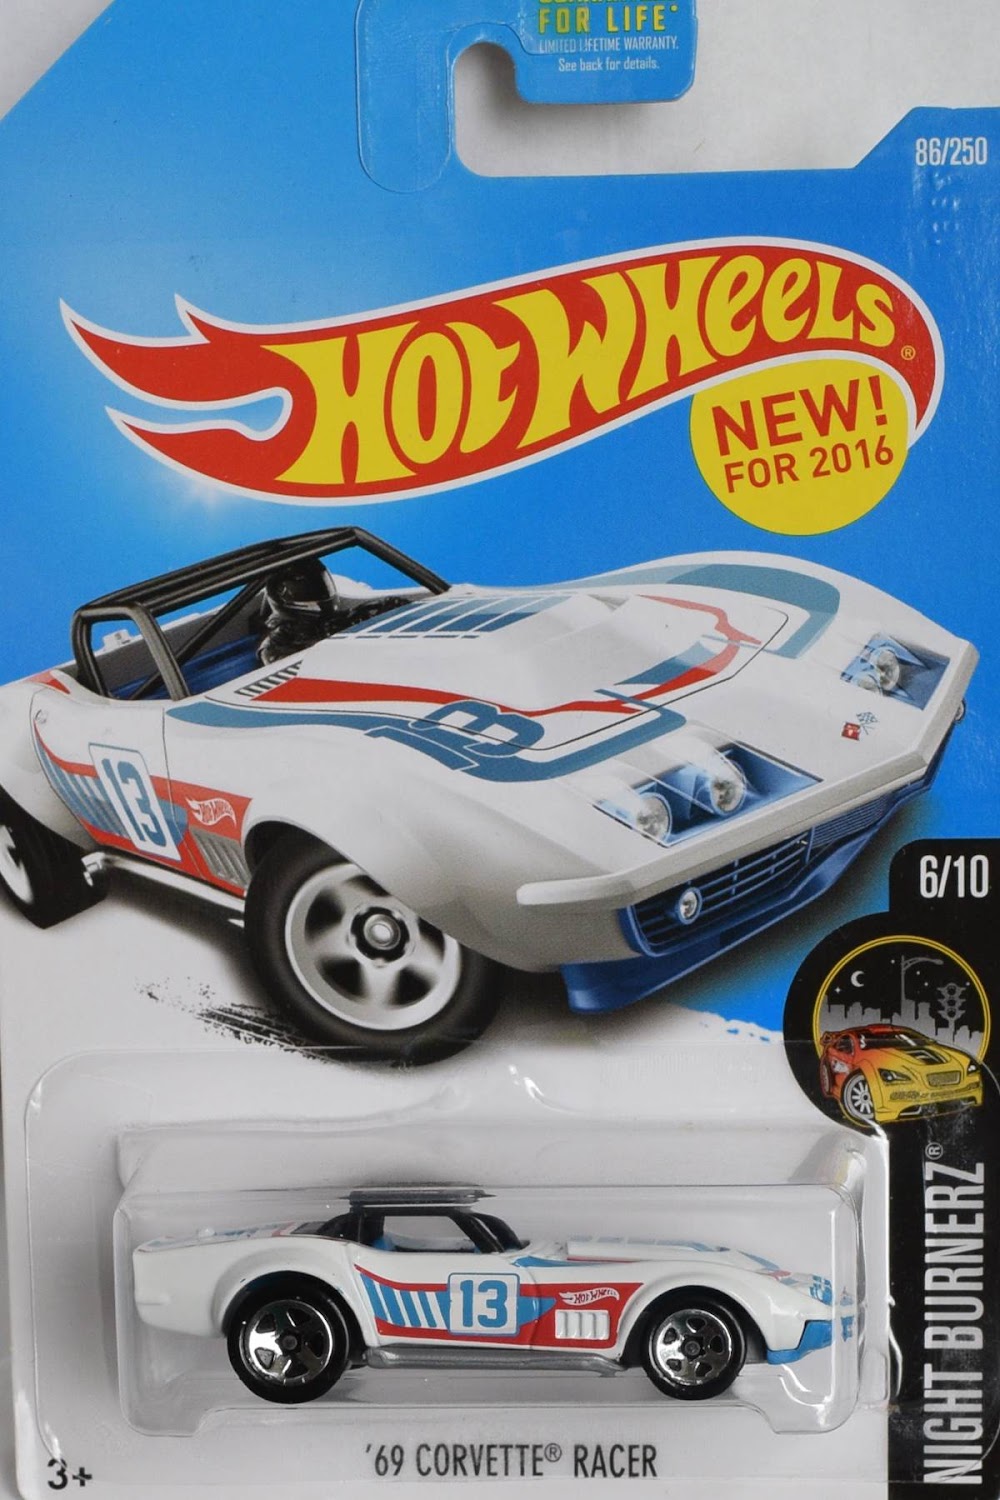 Corvette Racer 69